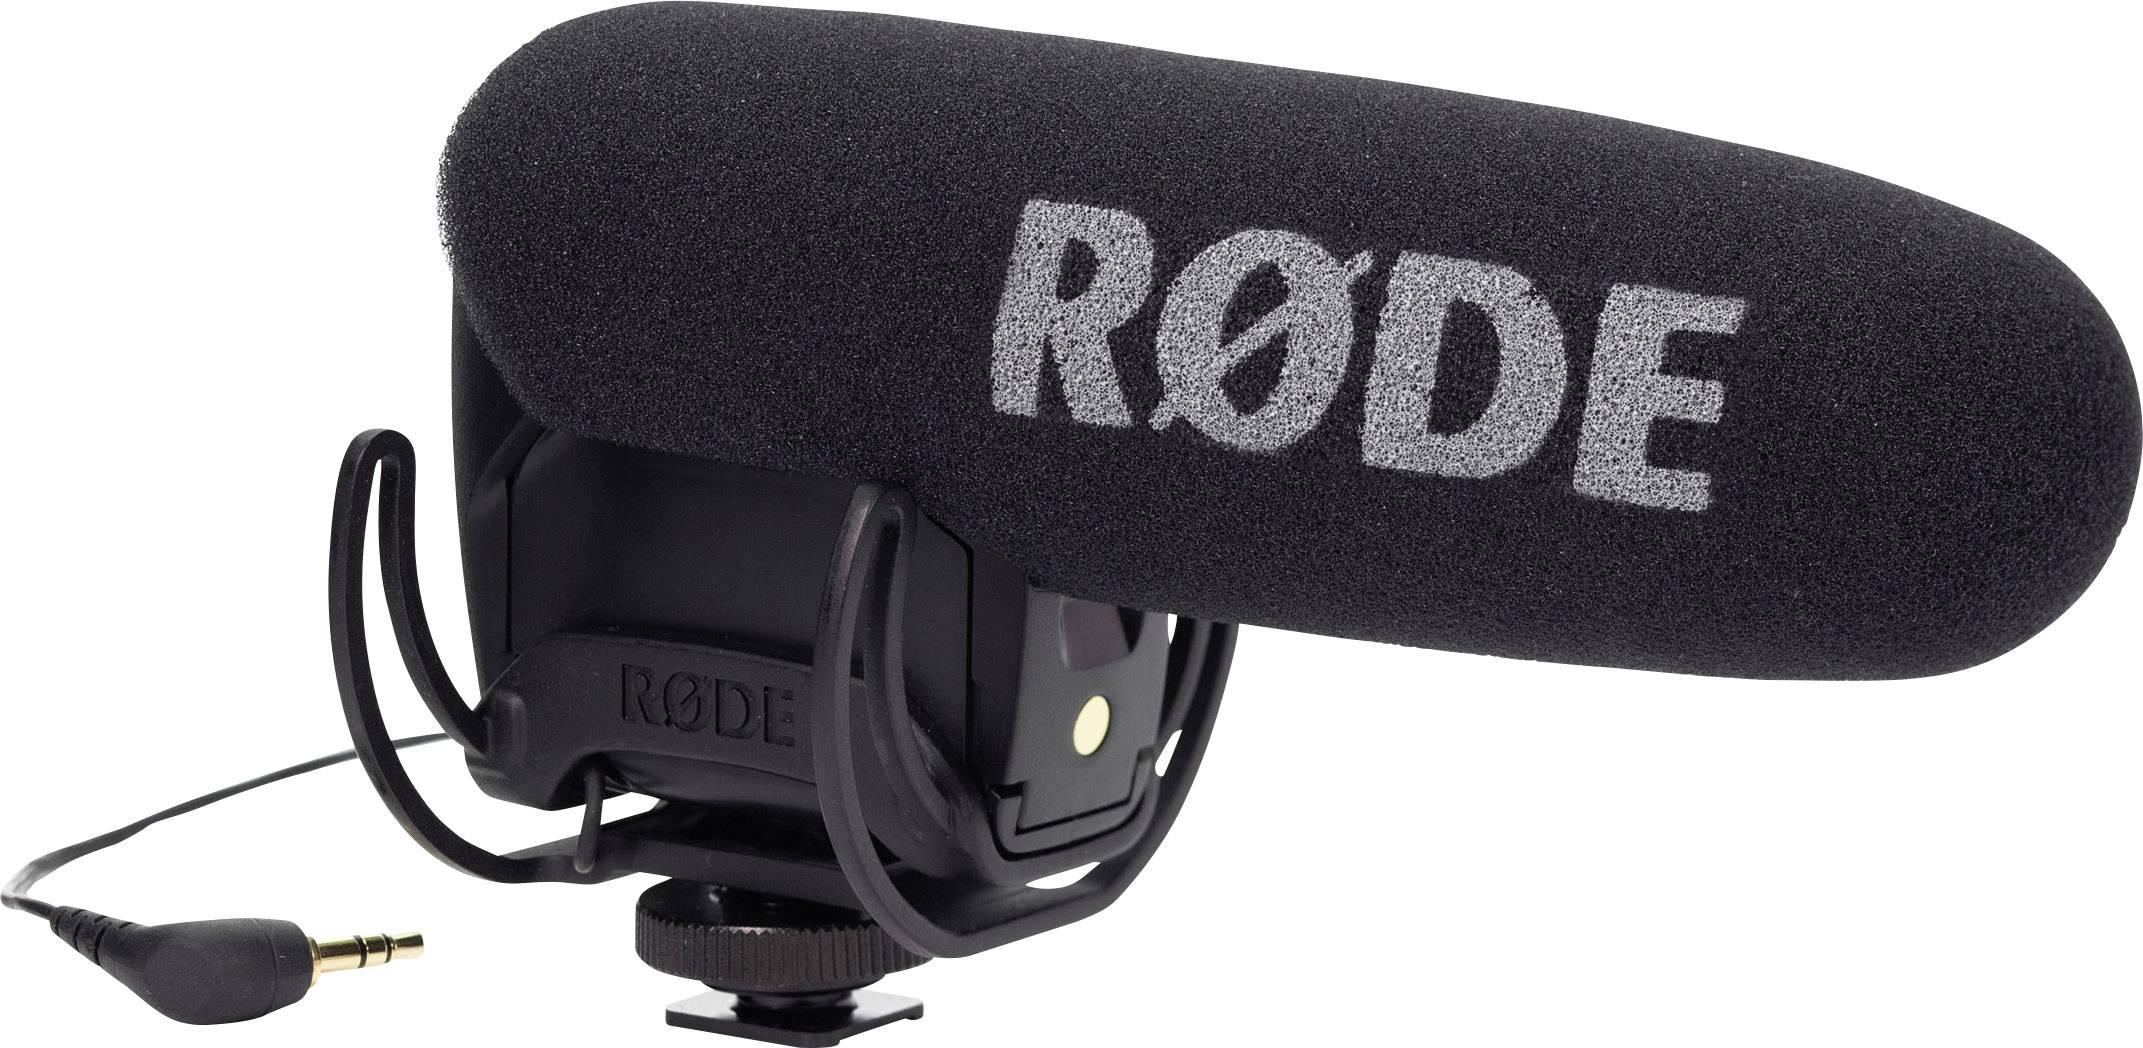 Rode - Videomic Pro Rycote_68